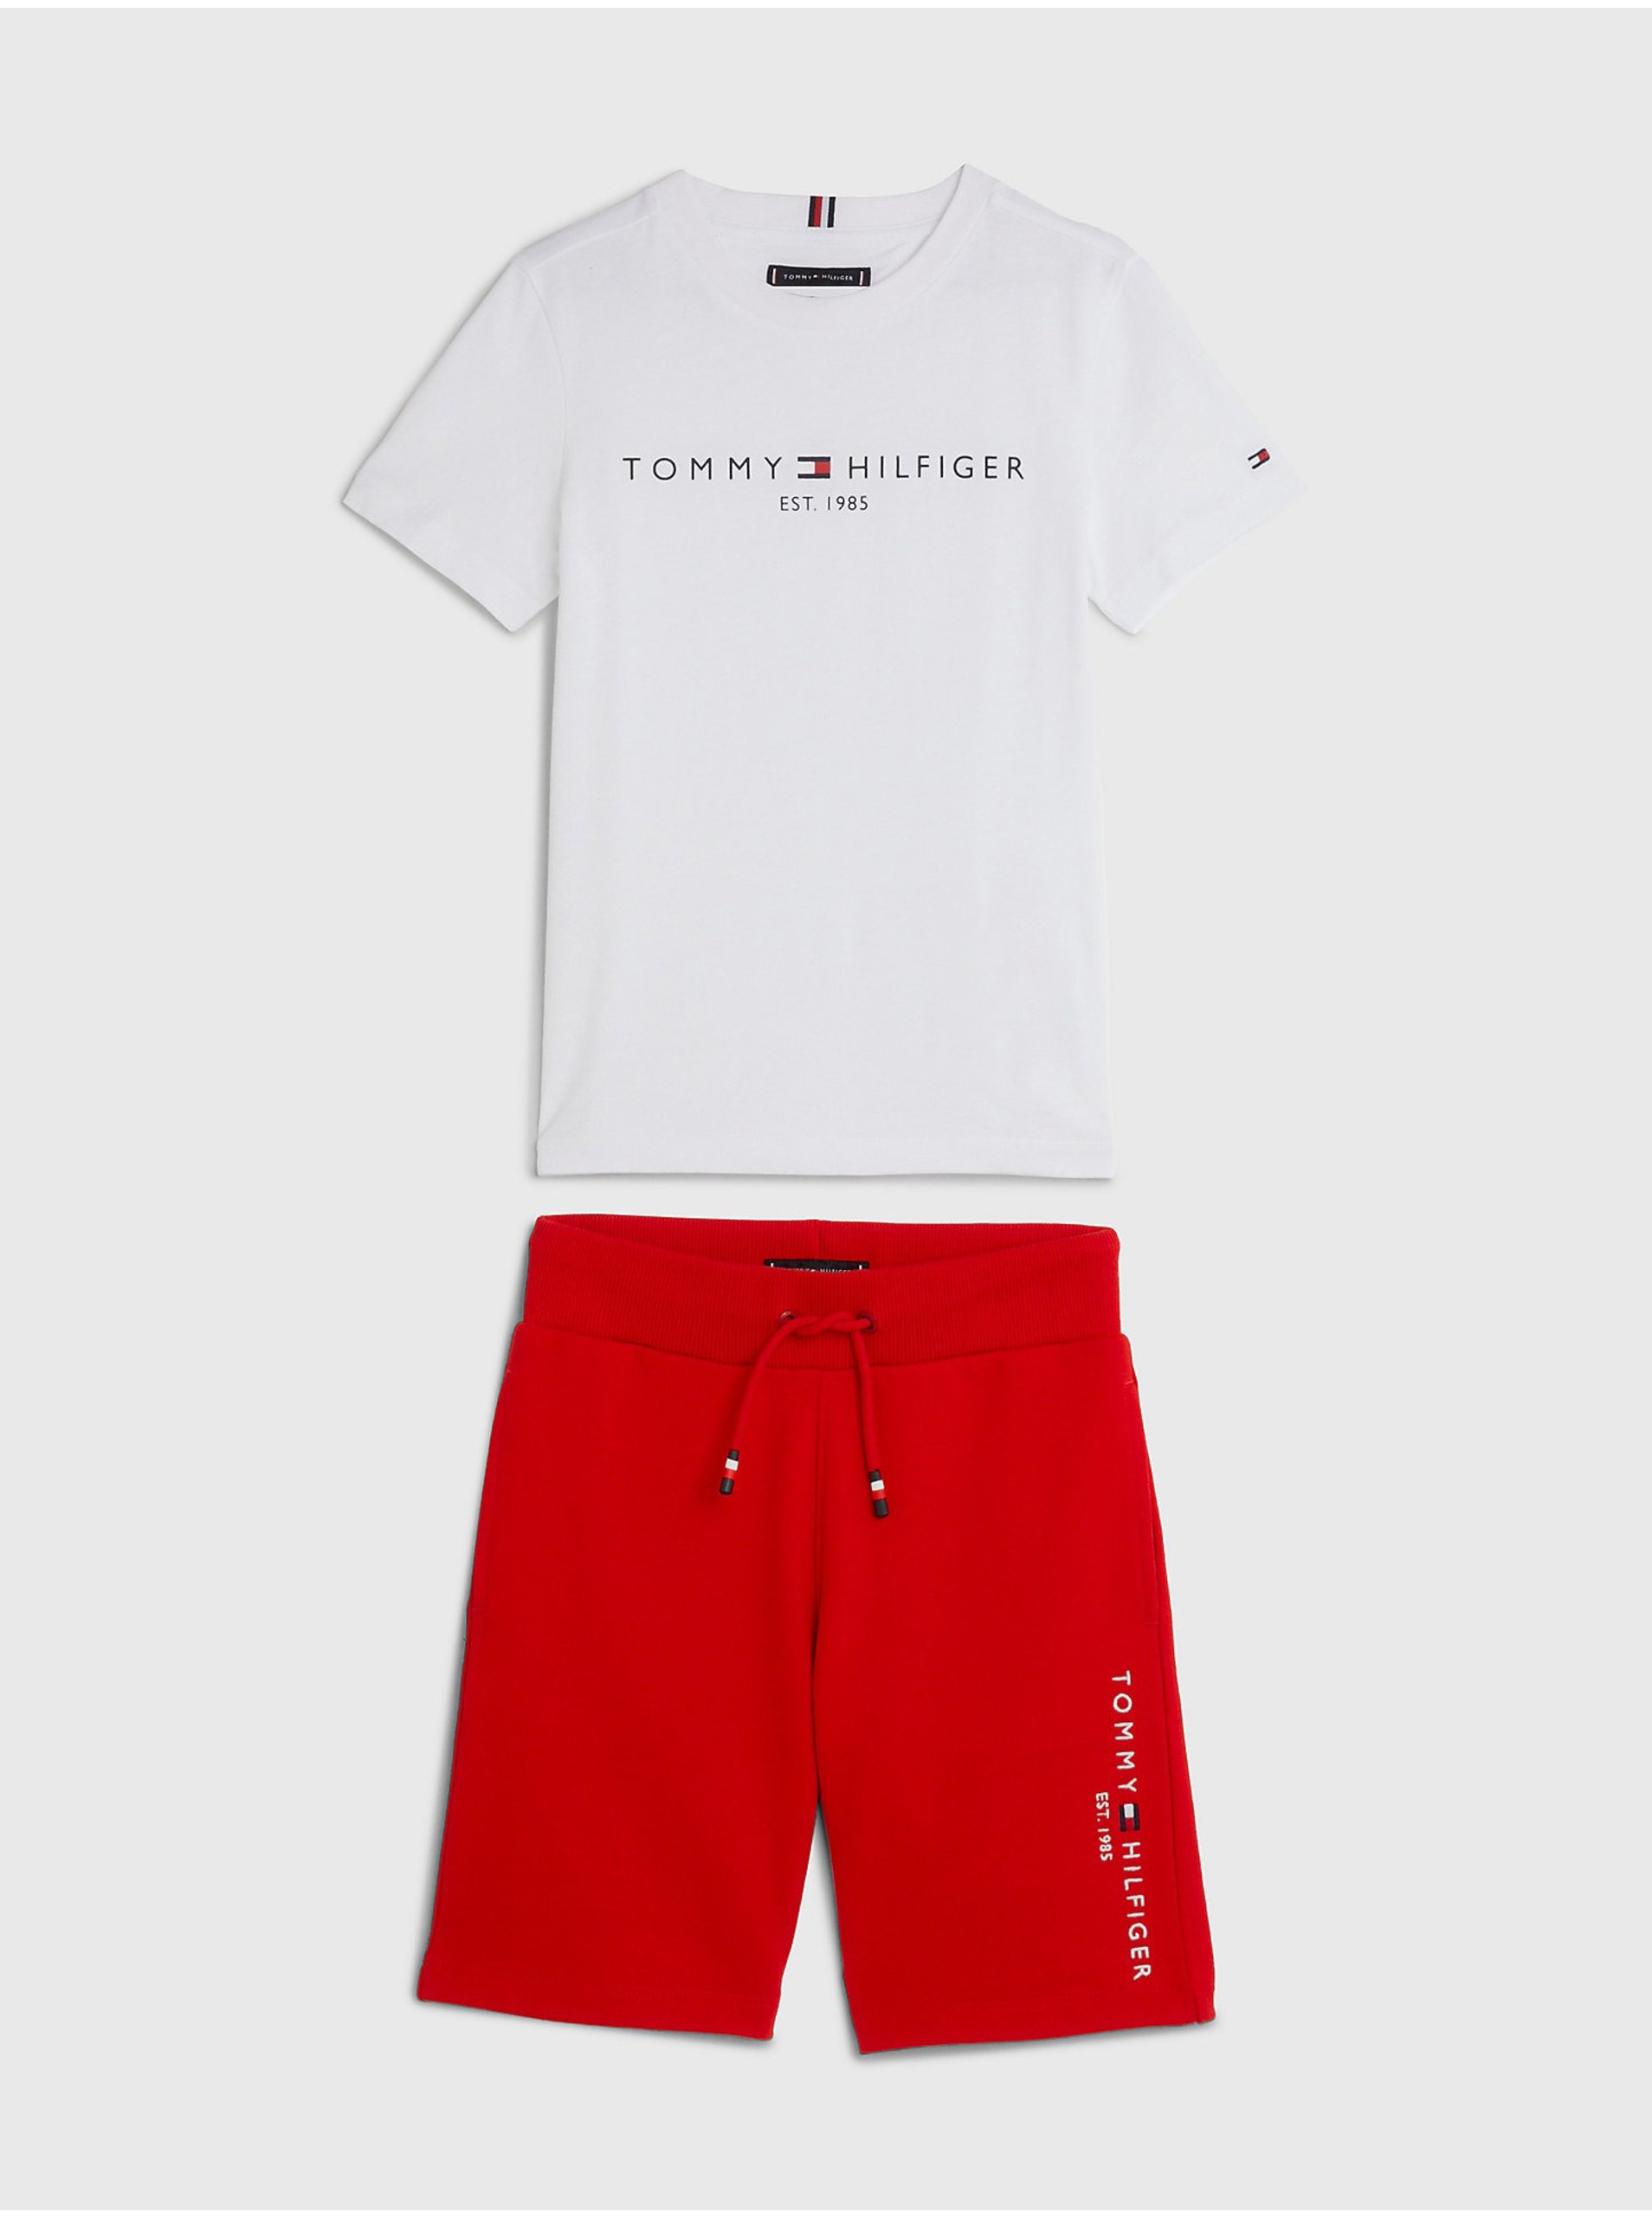 Lacno Sada chlapčenského trička a kraťasov v bielej a červenej farbe Tommy Hilfiger